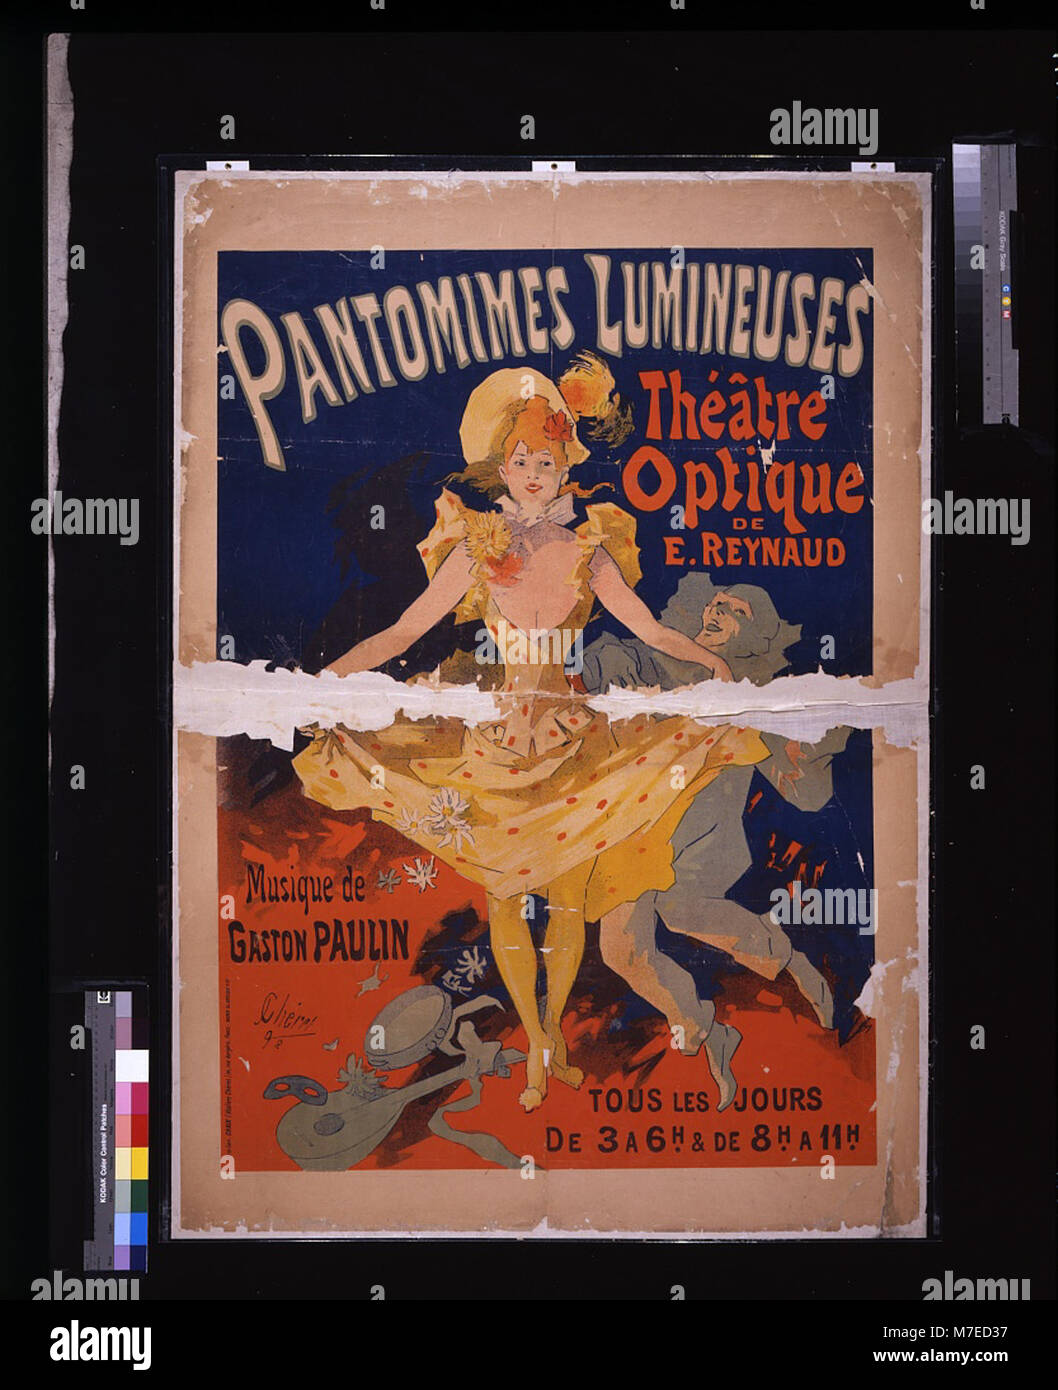 Pantomimes lumineuses- Théâtre optique de E. Reynaud, musique de Gaston Paulin - - J. Chéret, '92. LCCN2009632716 Stock Photo